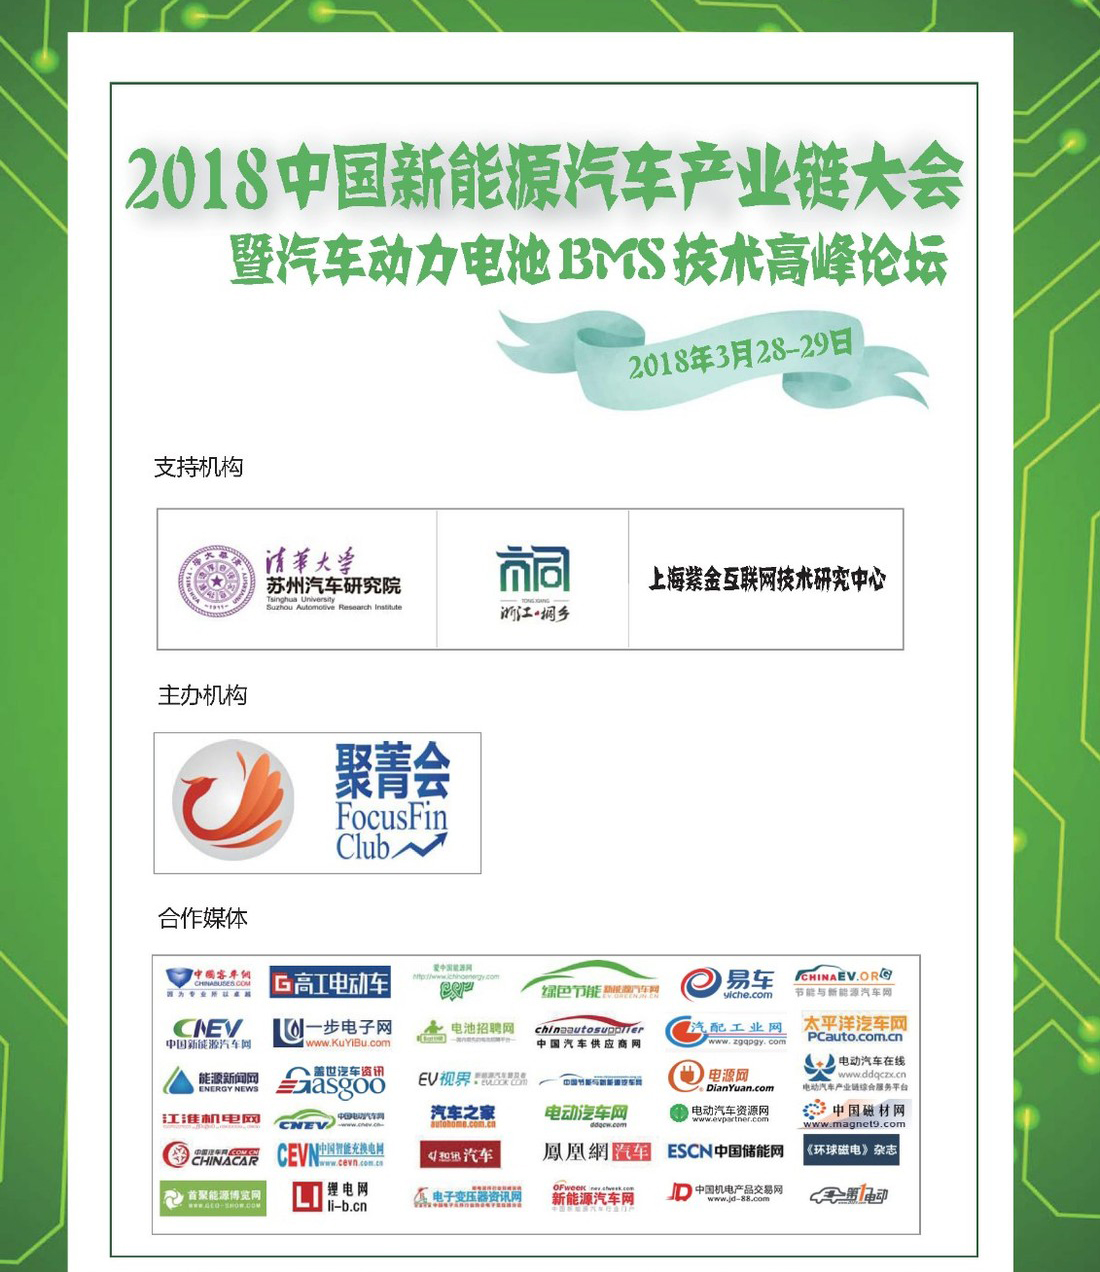 2018中国新能源汽车产业大会暨汽车动力电池BMS技术高峰论坛